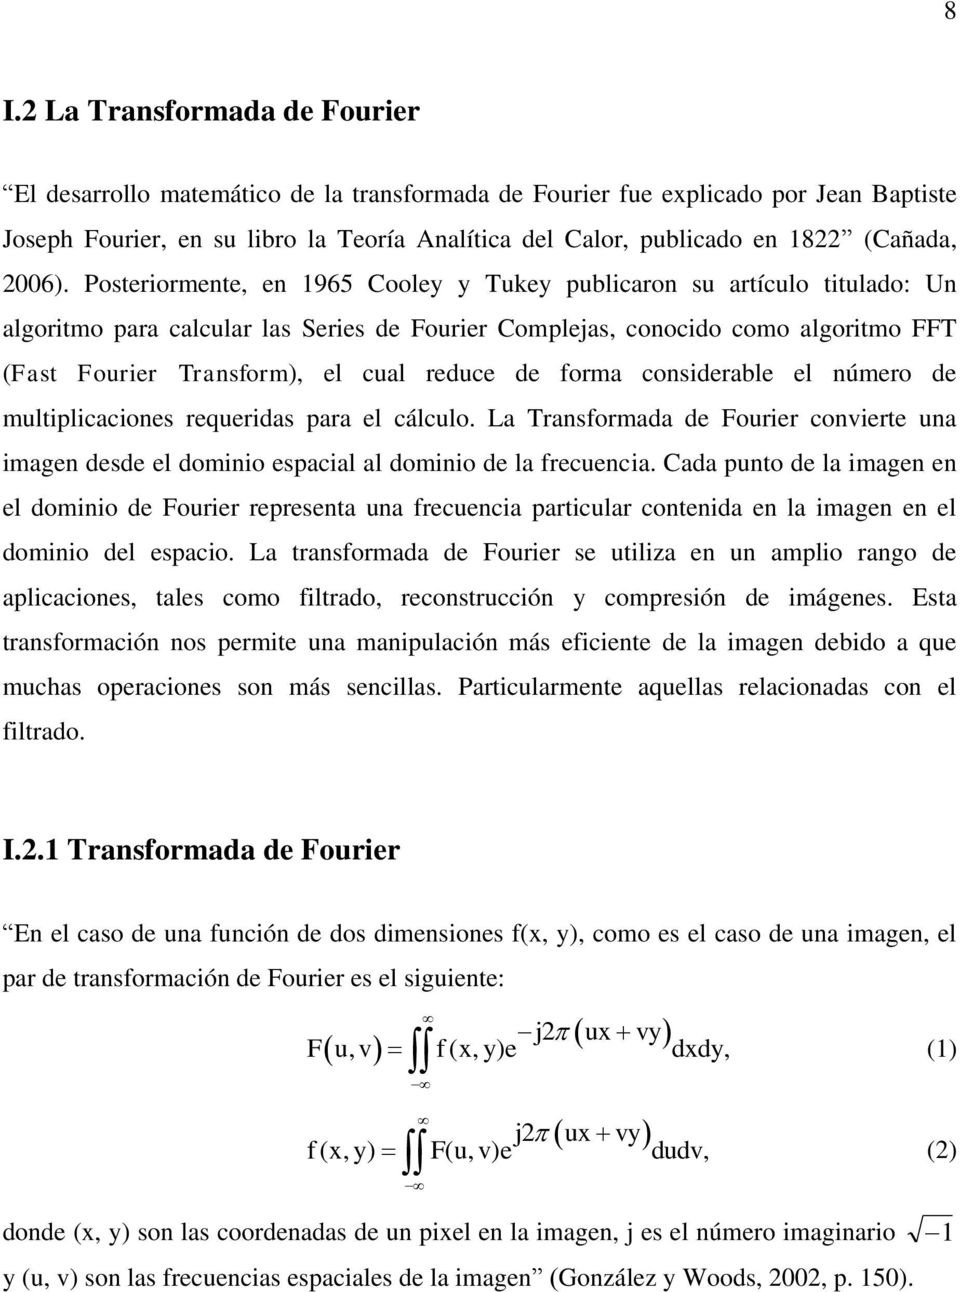 Posteriormente, en 1965 Cooley y Tukey publicaron su artículo titulado: Un algoritmo para calcular las Series de Fourier Complejas, conocido como algoritmo FFT (Fast Fourier Transform), el cual